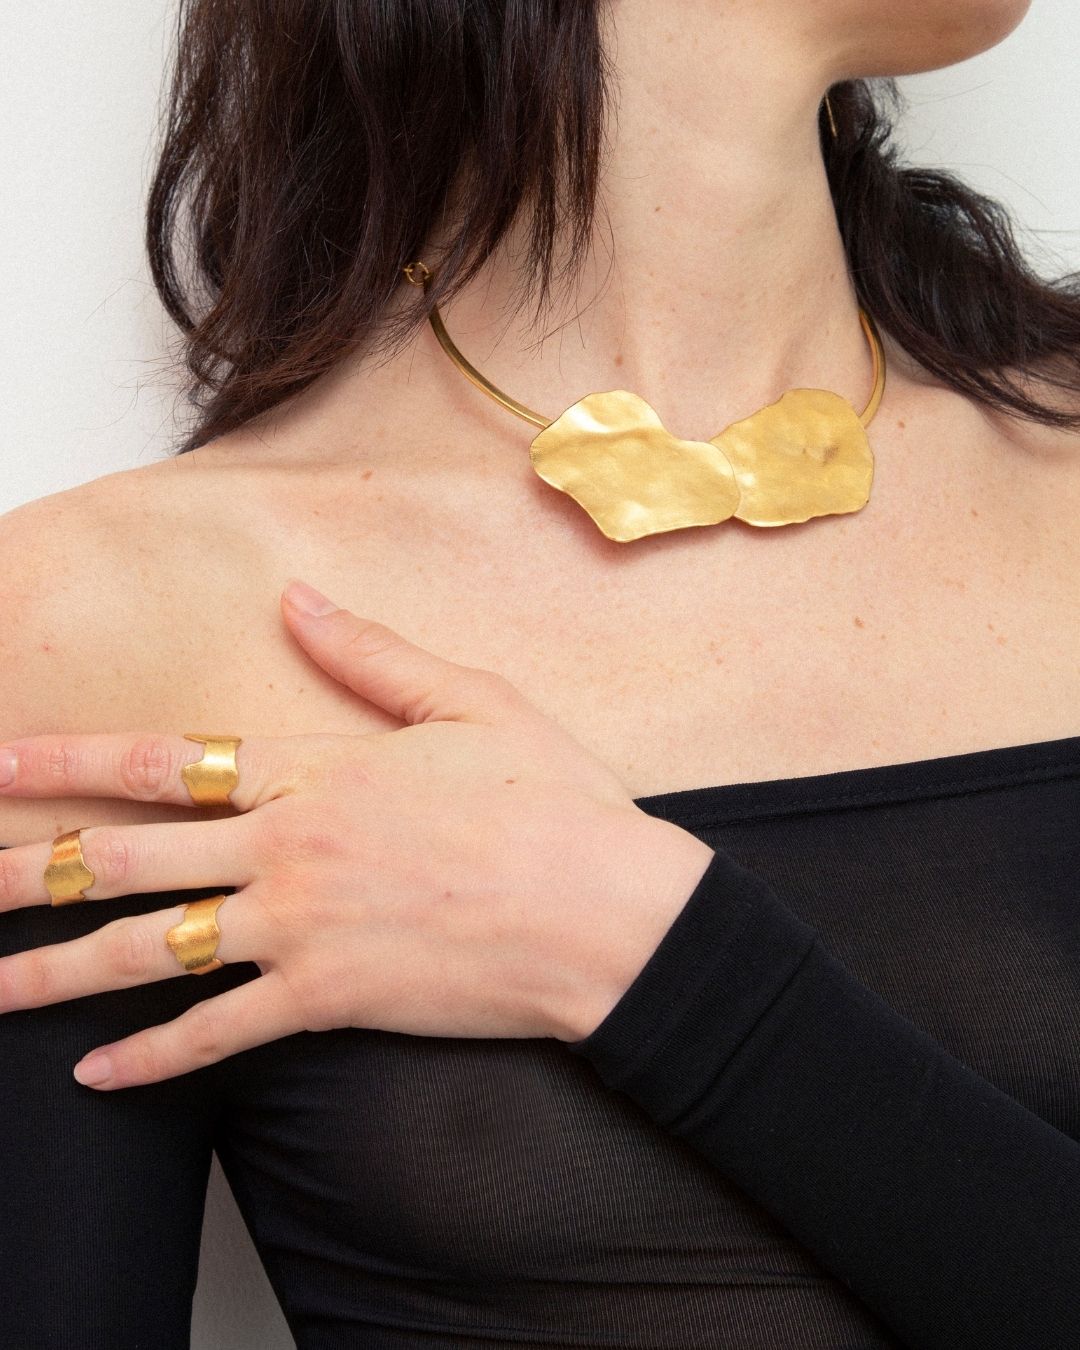 Le collier de l'Édition 01 a été fabriqué à la main par nos artisans en Espagne, après avoir été dessiné par Barbara à Paris. Un collier de caractère intemporel à la texture unique disponible en laiton recyclé et plaqué or pur (24 carats, trois microns).